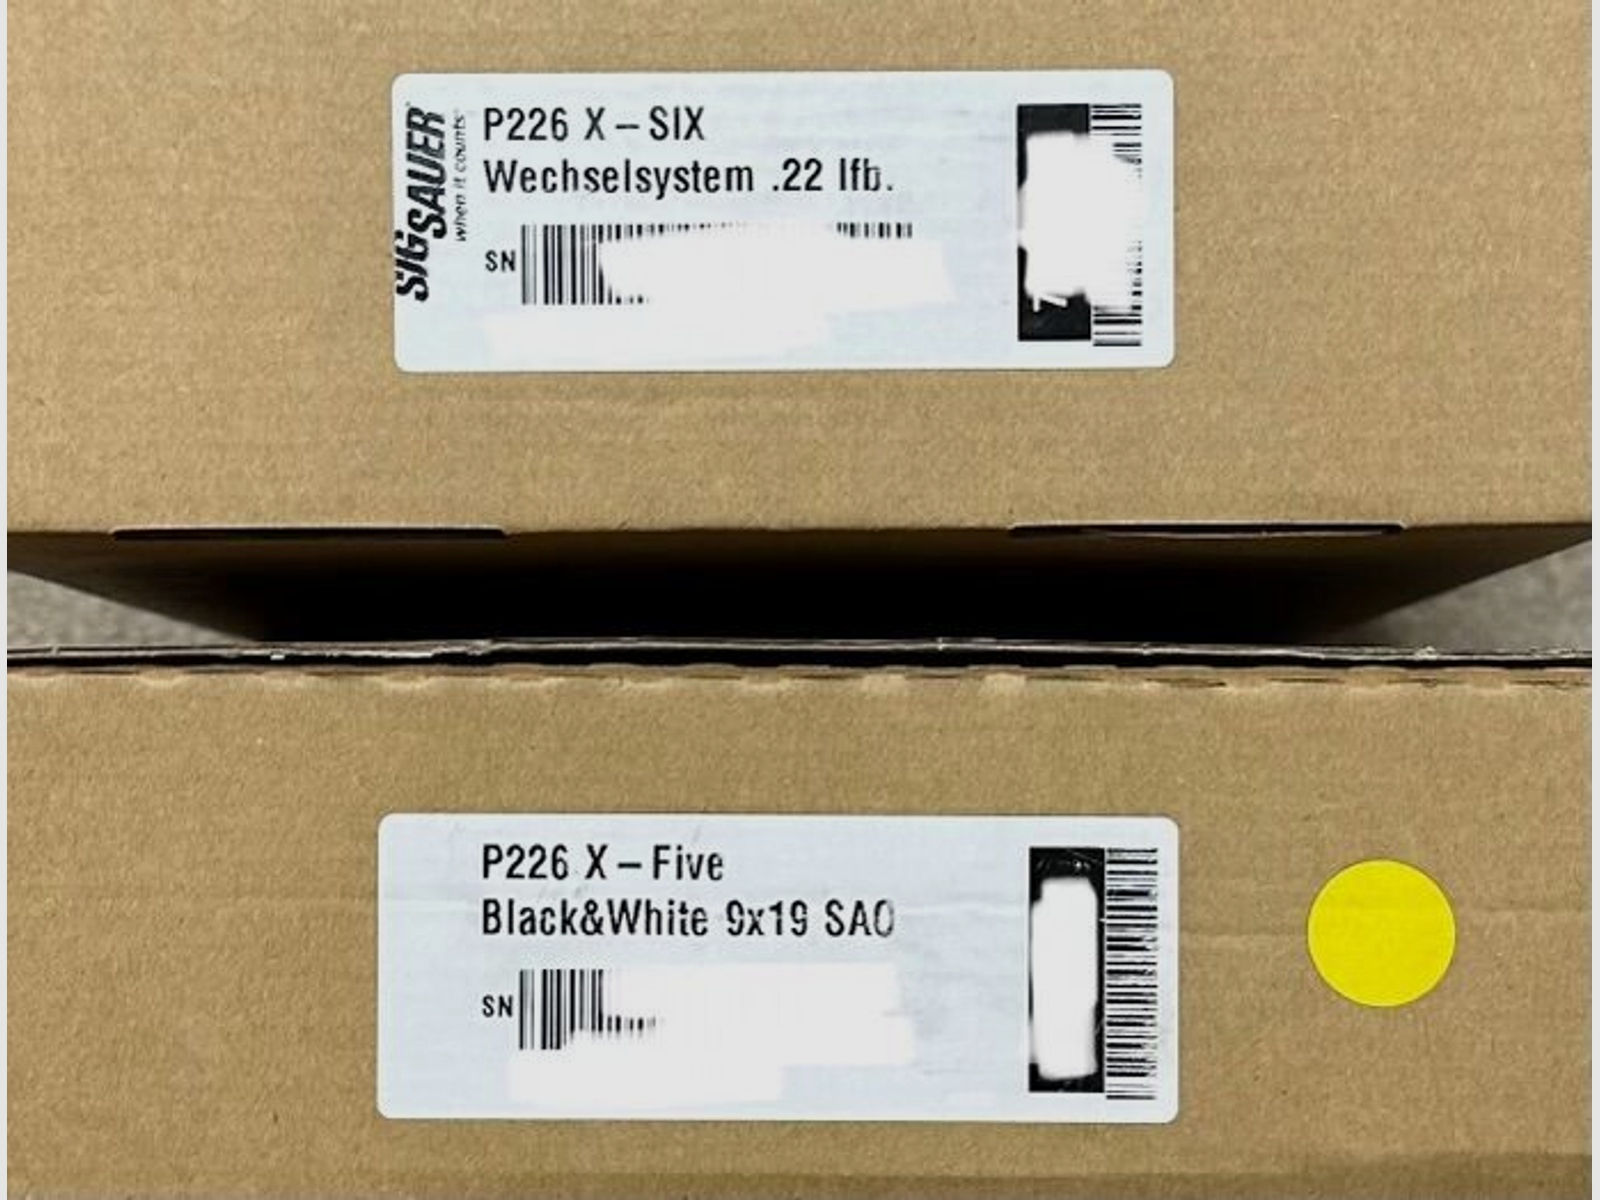 Sig Sauer Made in Germany	 P226 X-FIVE Black & White und X-SIX .22 WS Wechselsystem mit Romeo 1